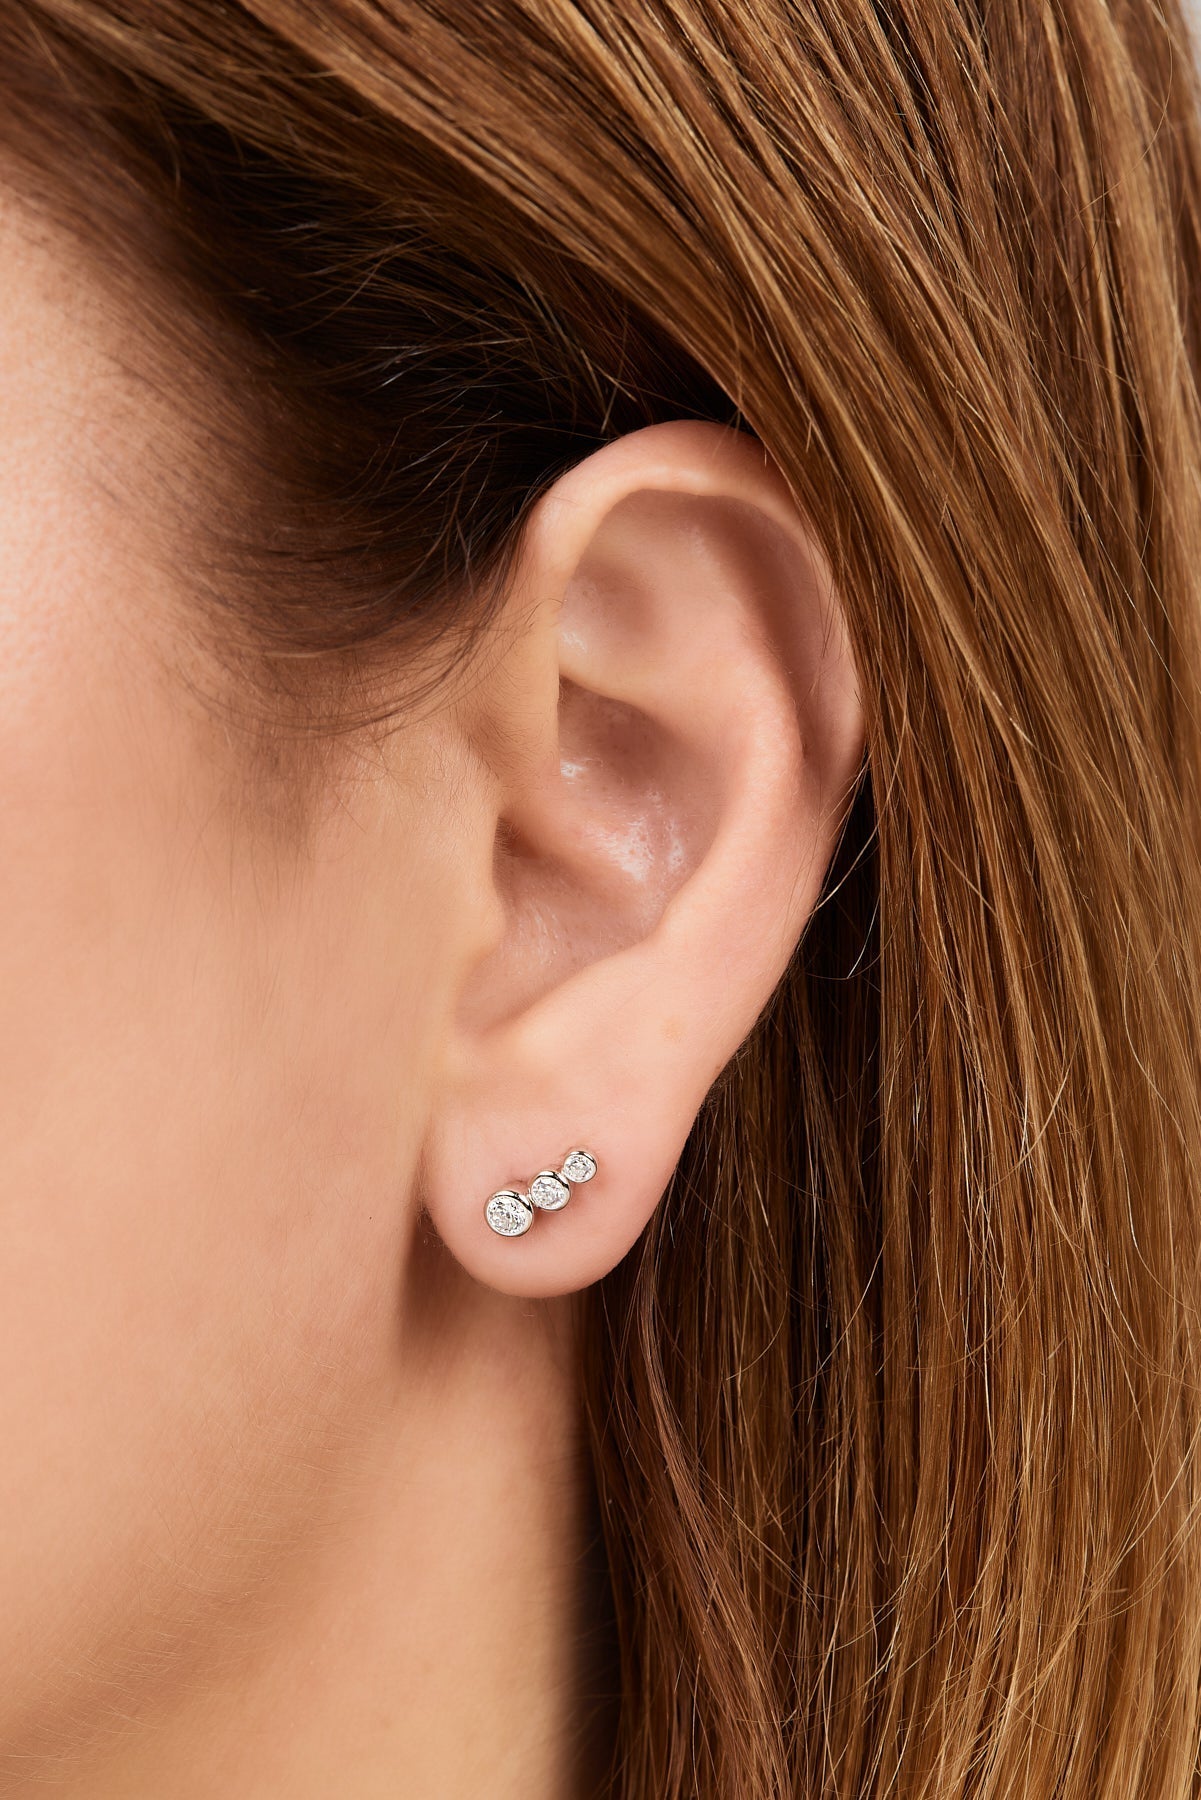 Single earring Lola mini croissant sterling silver stud earring